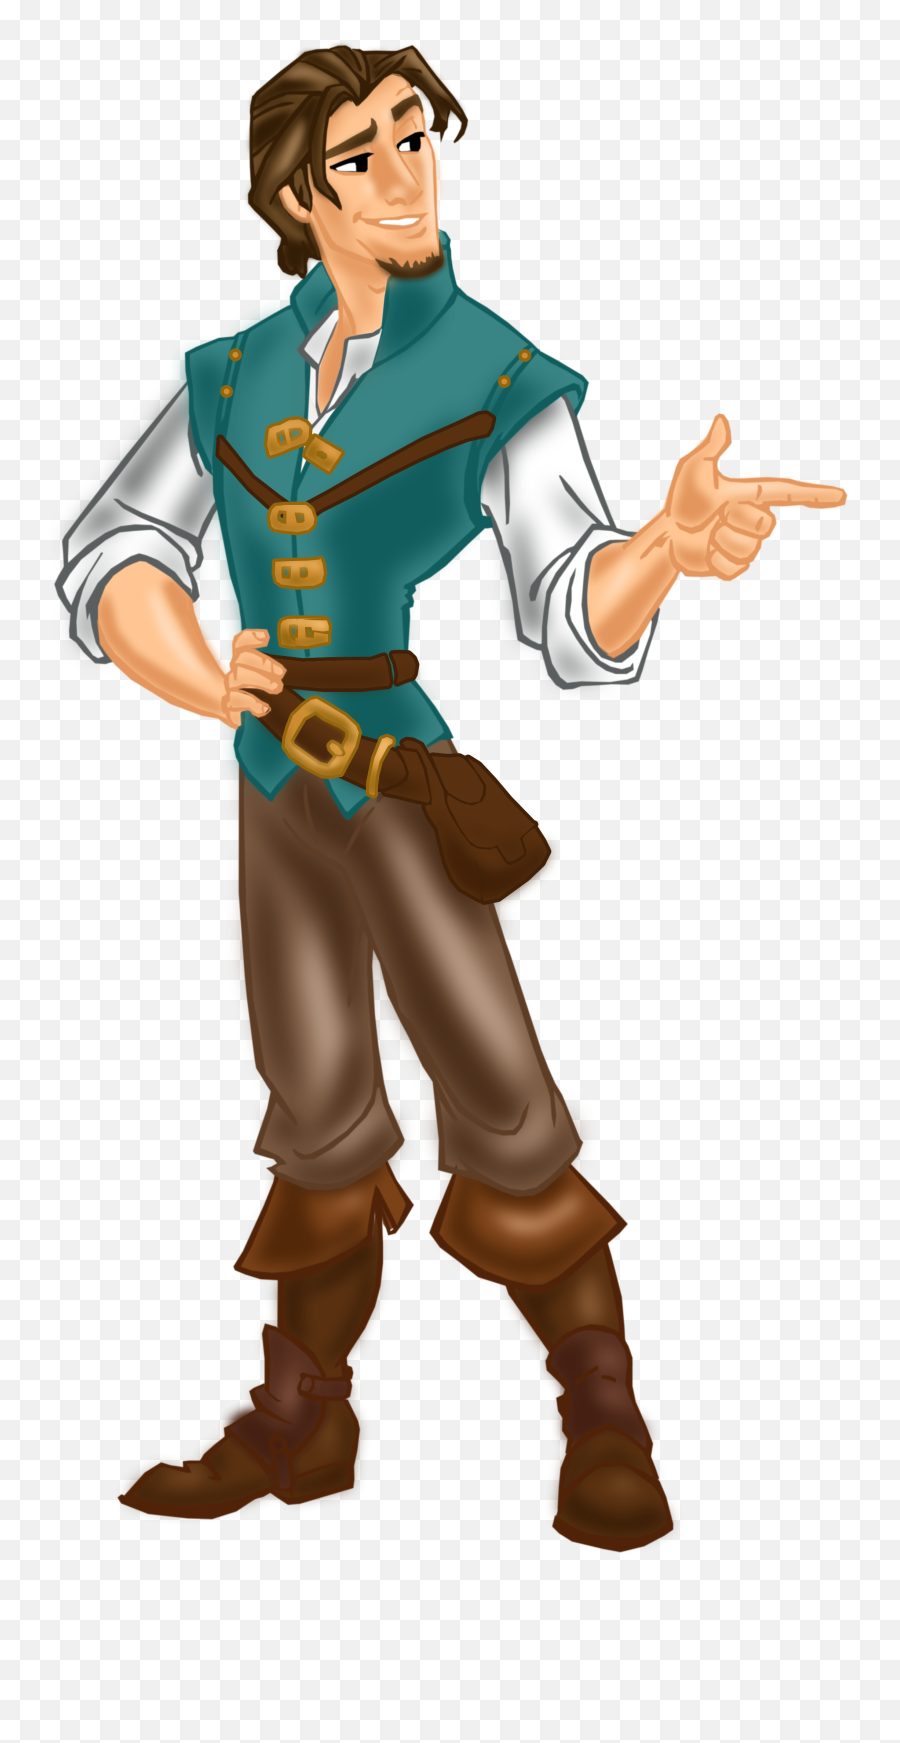 Disney Prince Flynn Rider Clipart - Flynn Rider Clipart Emoji,Prince Clipart